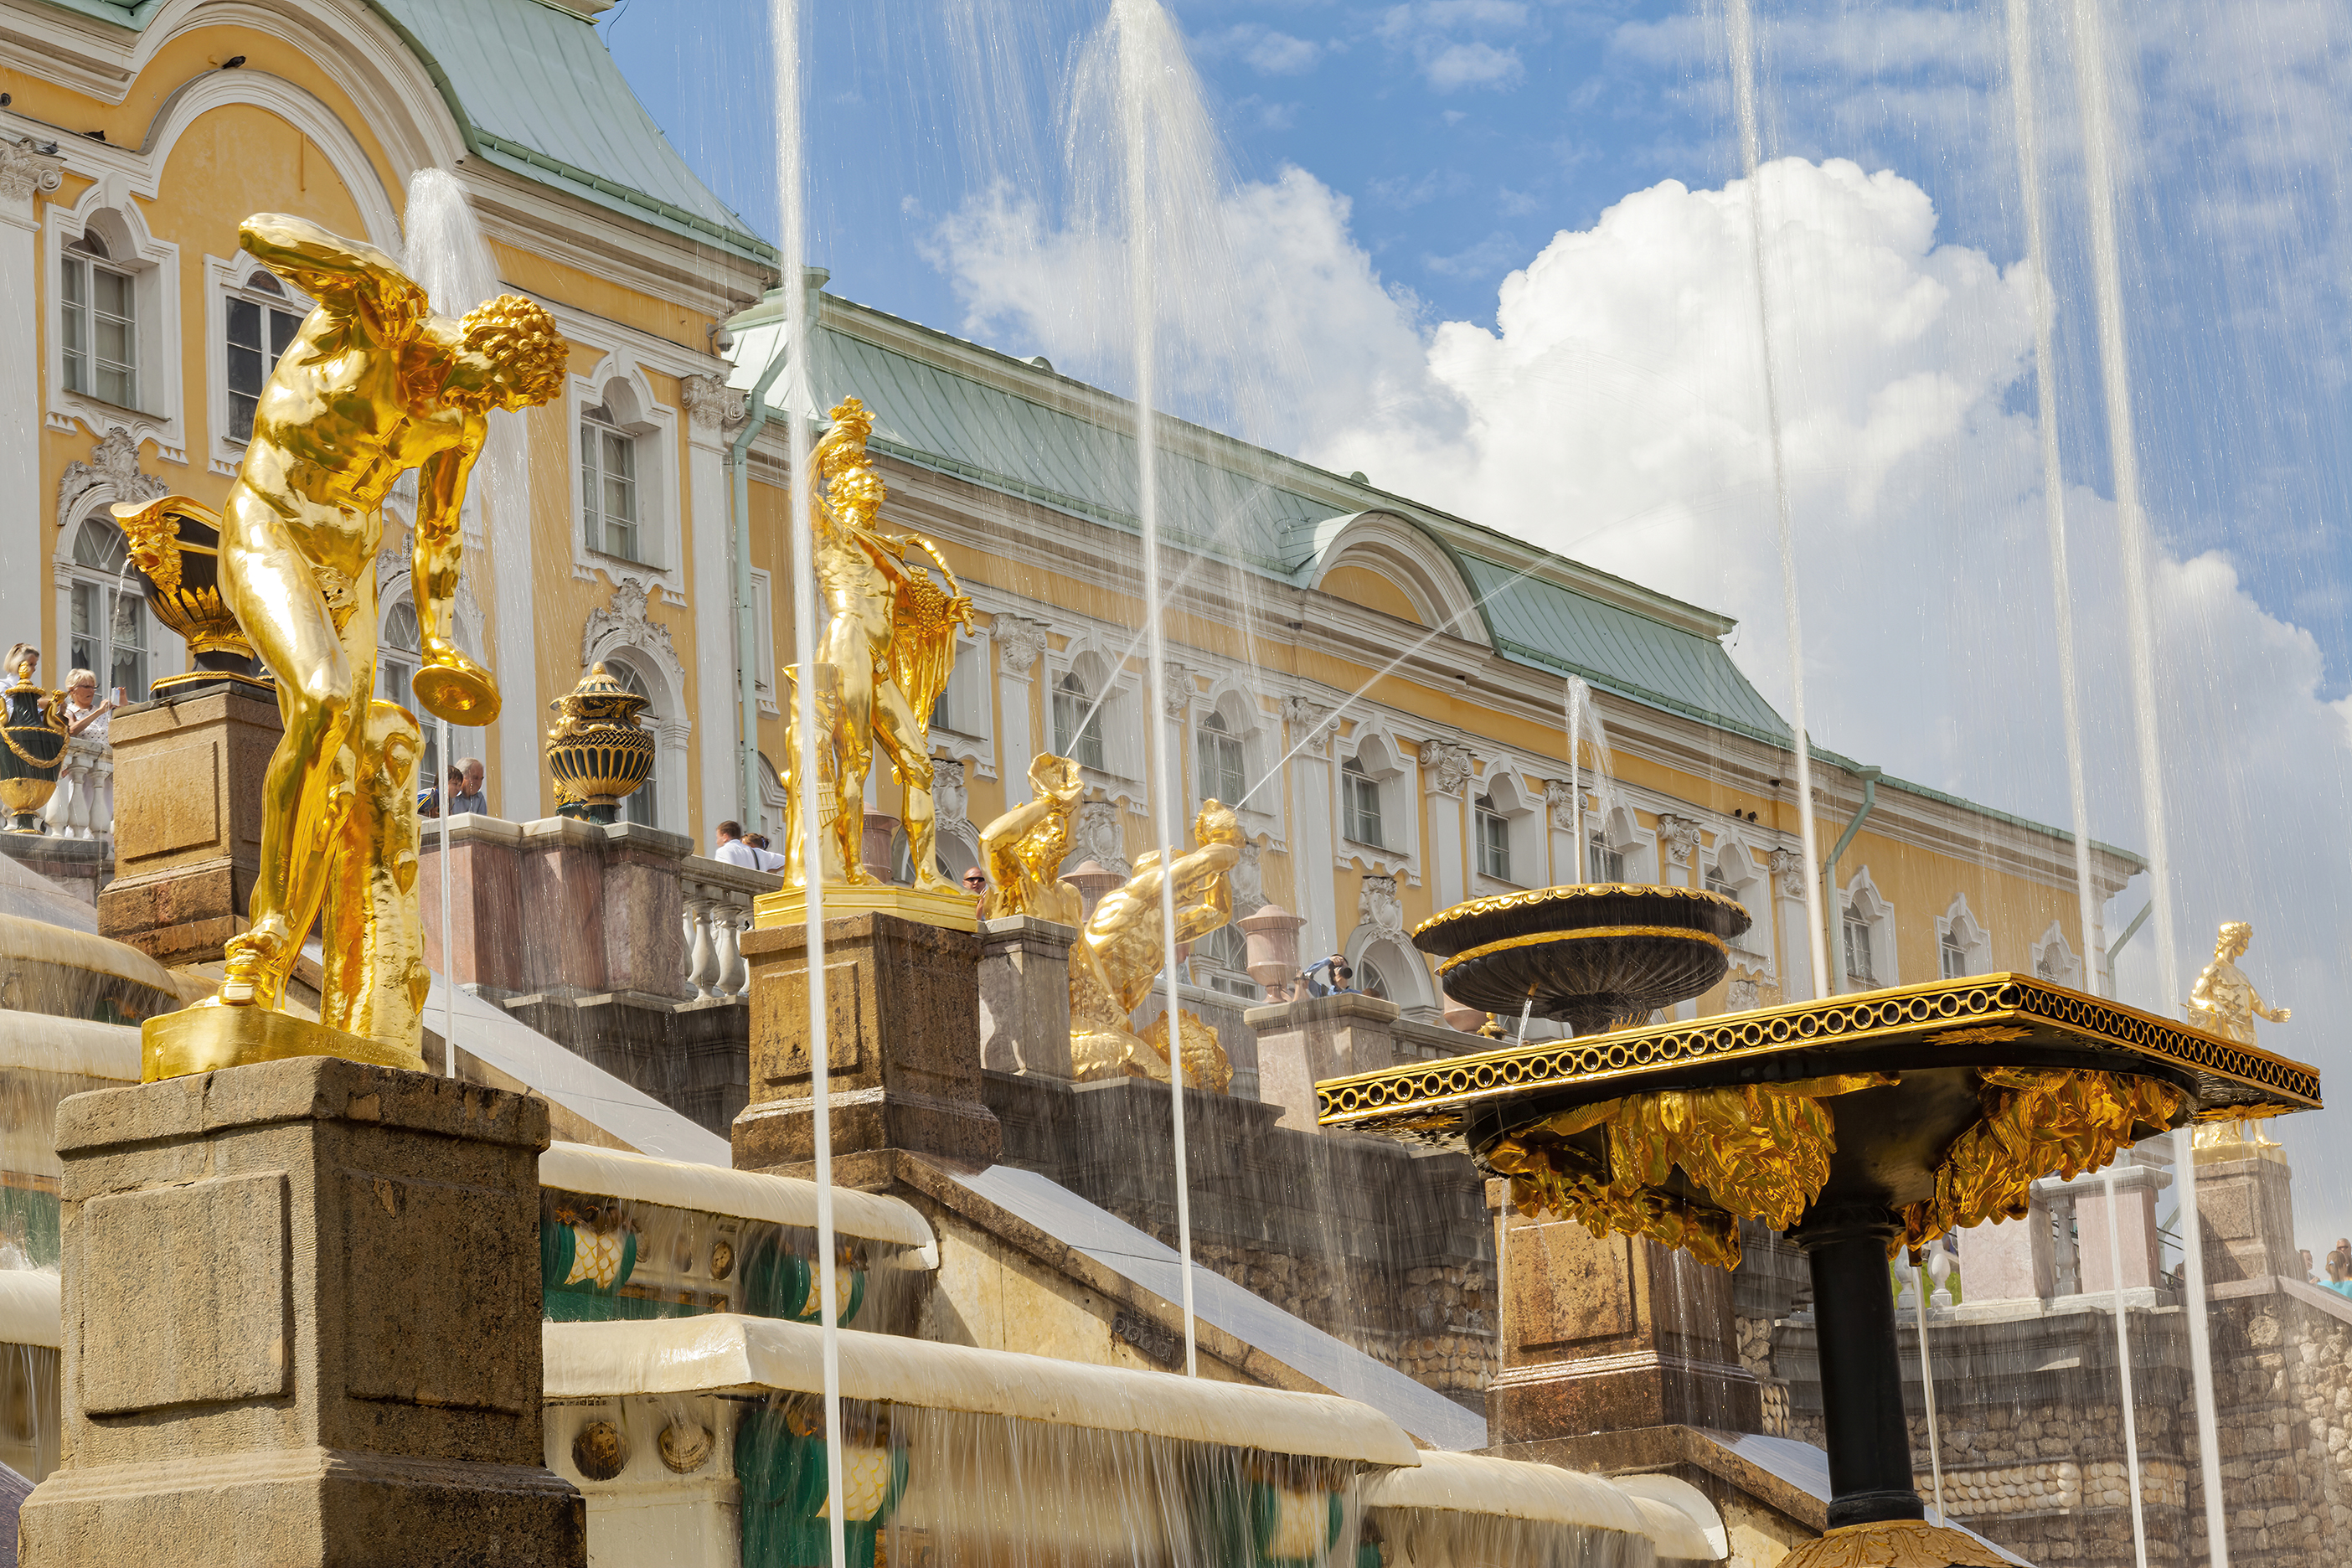 Iconic cities Saint Petersburg fountains of Peterhof Saint Petersburg Russia July 2012 03